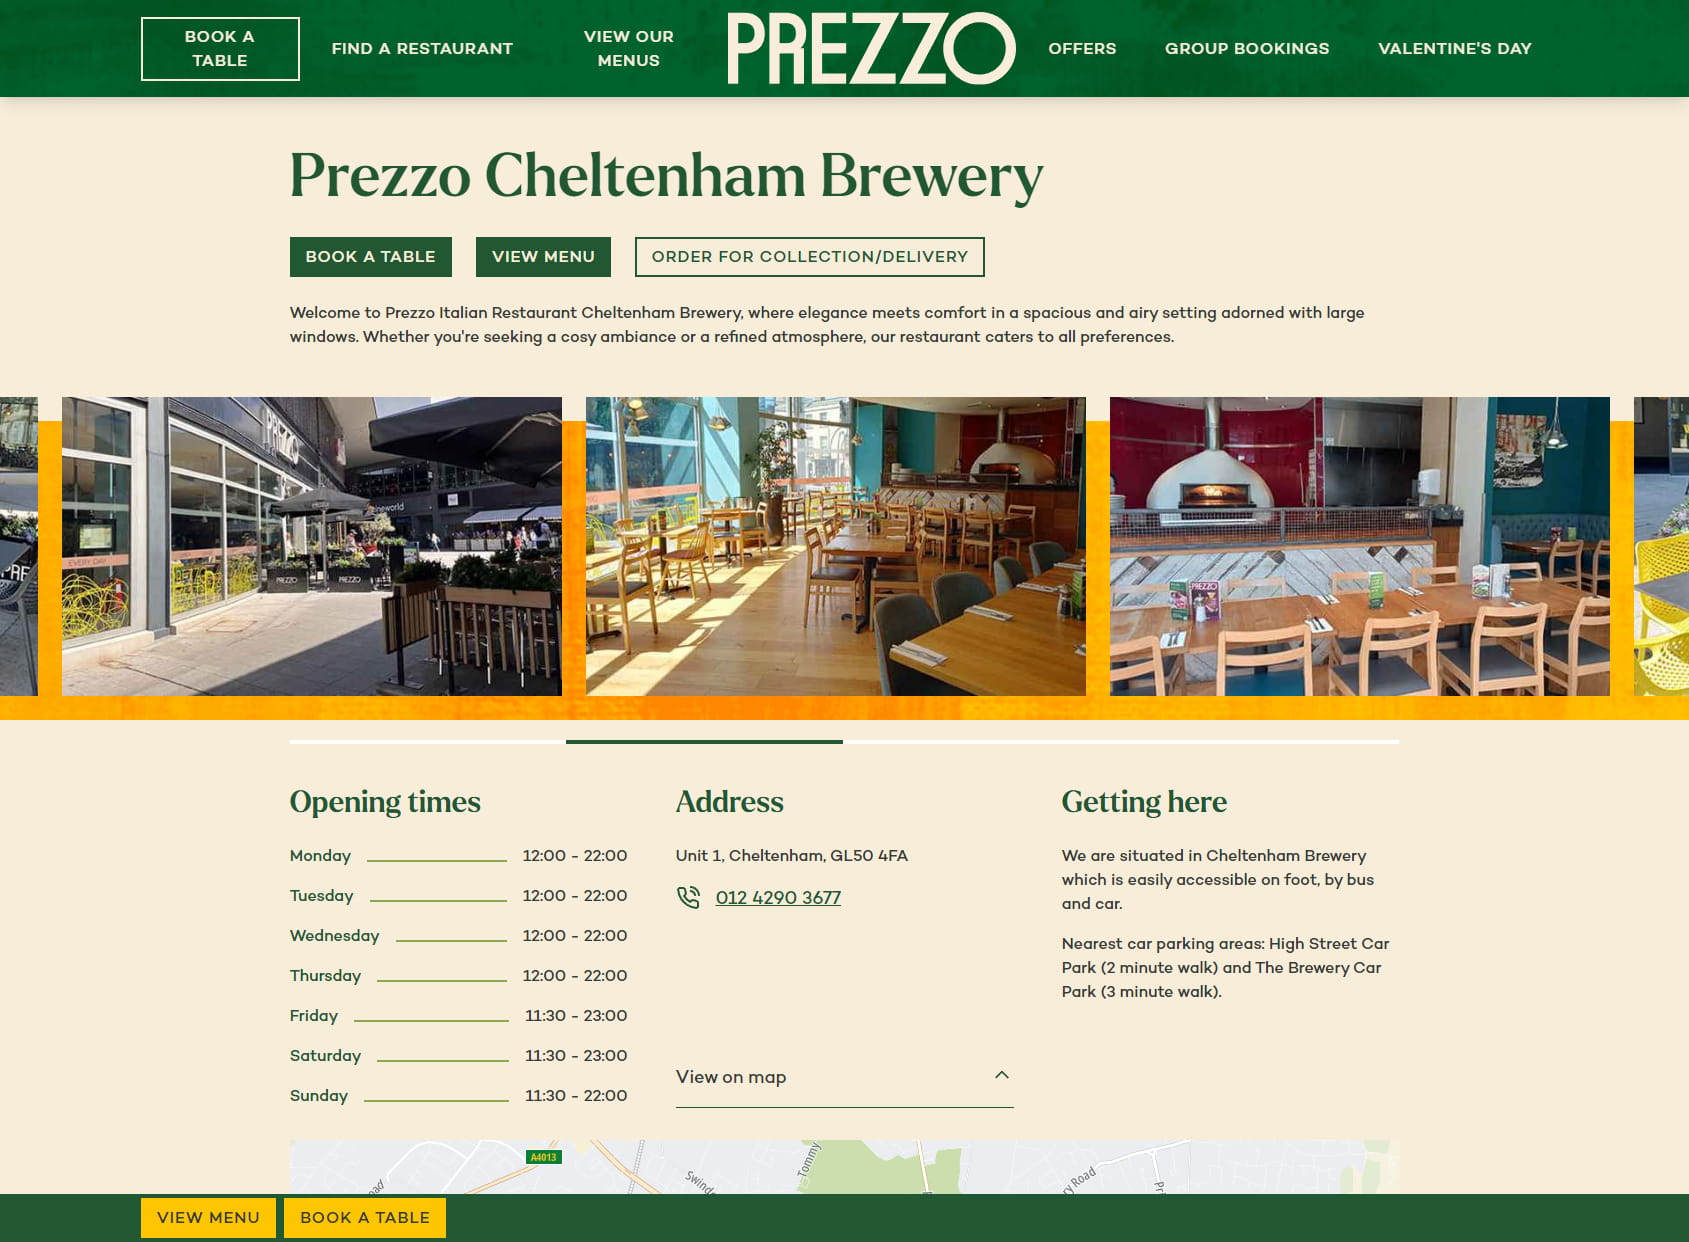 Prezzo Italian Restaurant Cheltenham Brewery